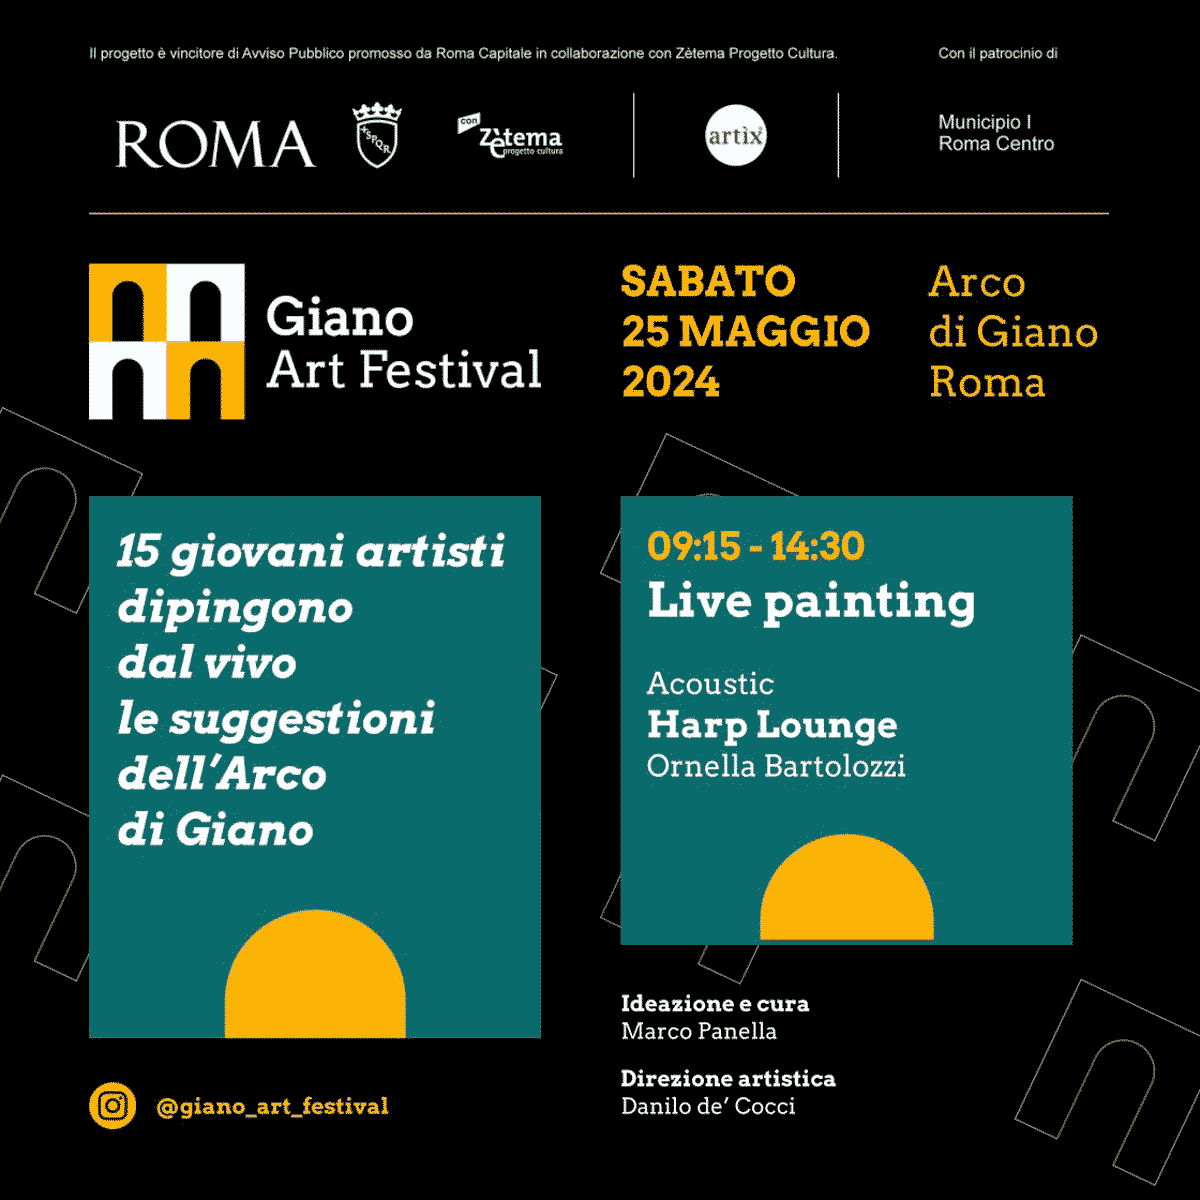 Giano Art Festival